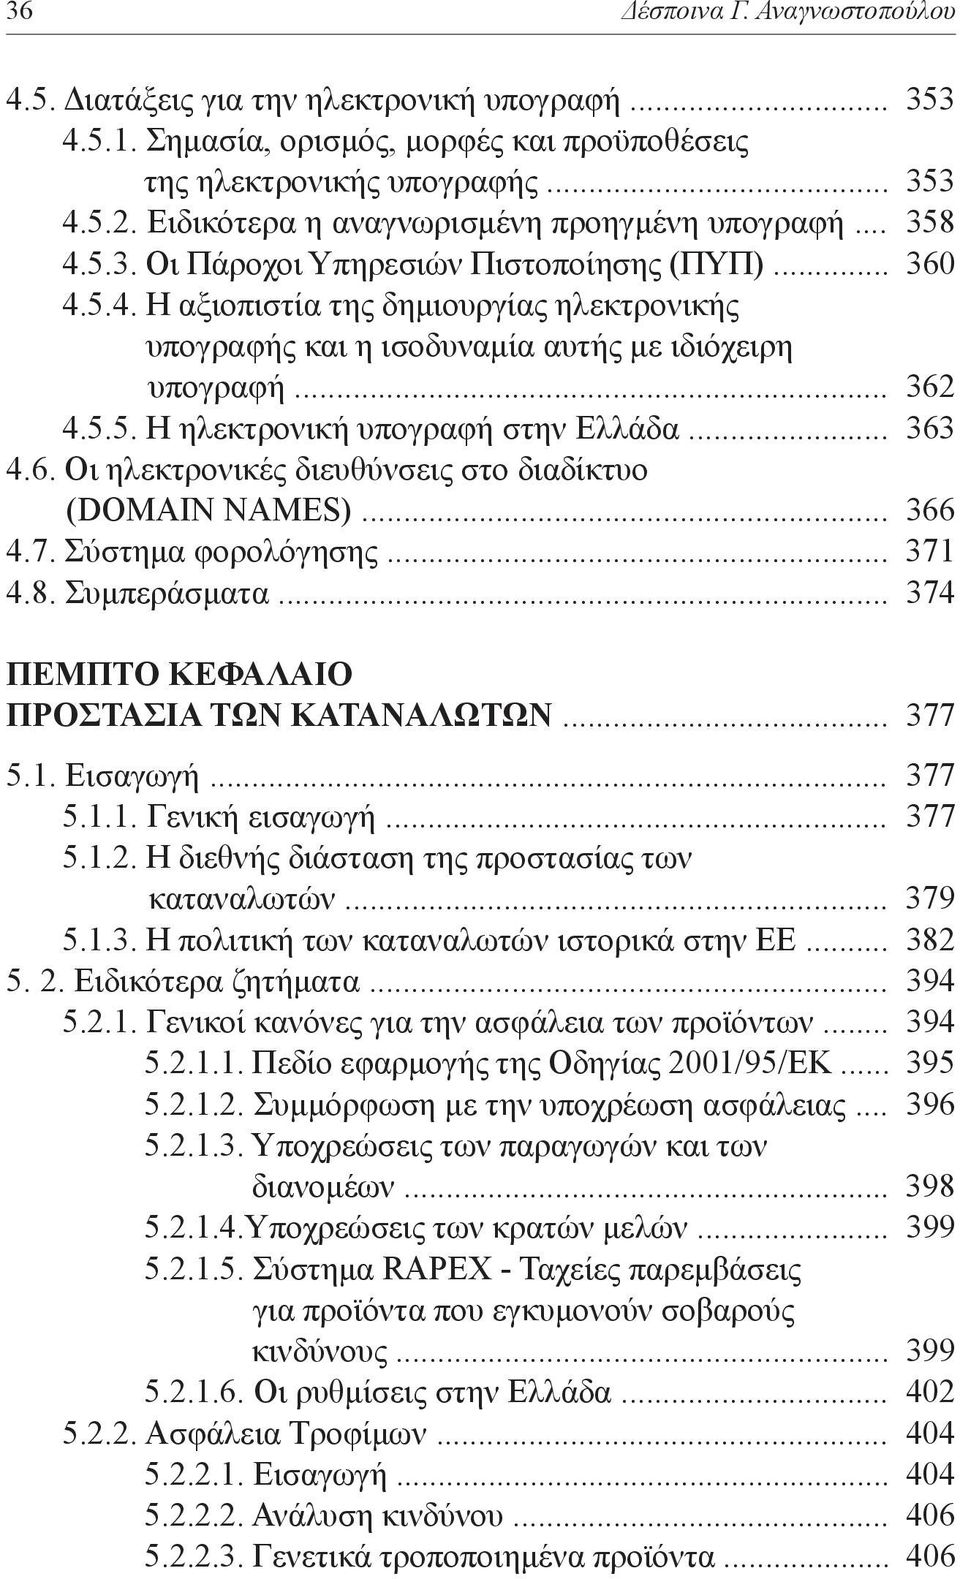 .. 362 4.5.5. Η ηλεκτρονική υπογραφή στην Ελλάδα... 363 4.6. Οι ηλεκτρονικές διευθύνσεις στο διαδίκτυο (DOMAIN NAMES)... 366 4.7. Σύστημα φορολόγησης... 371 4.8. Συμπεράσματα.